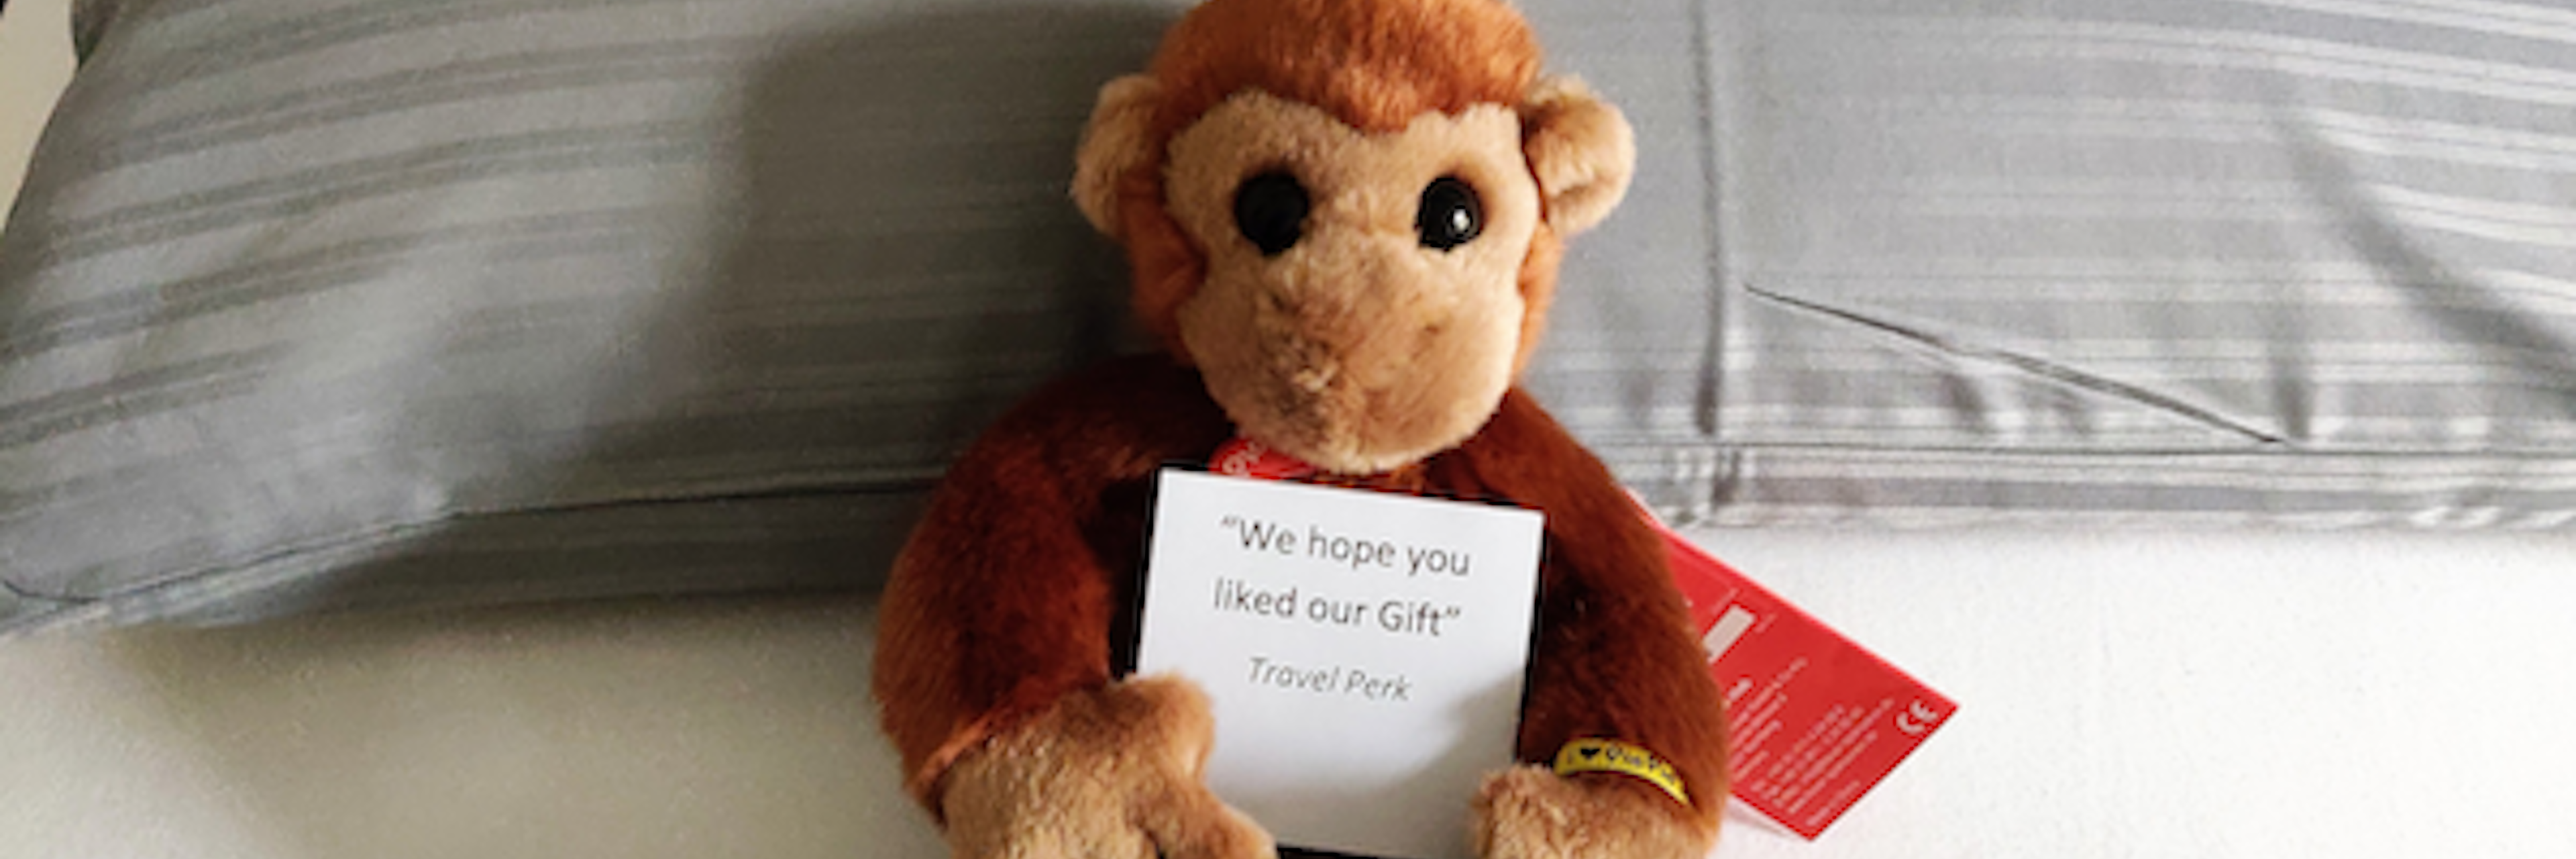 TravelPerk toy monkey